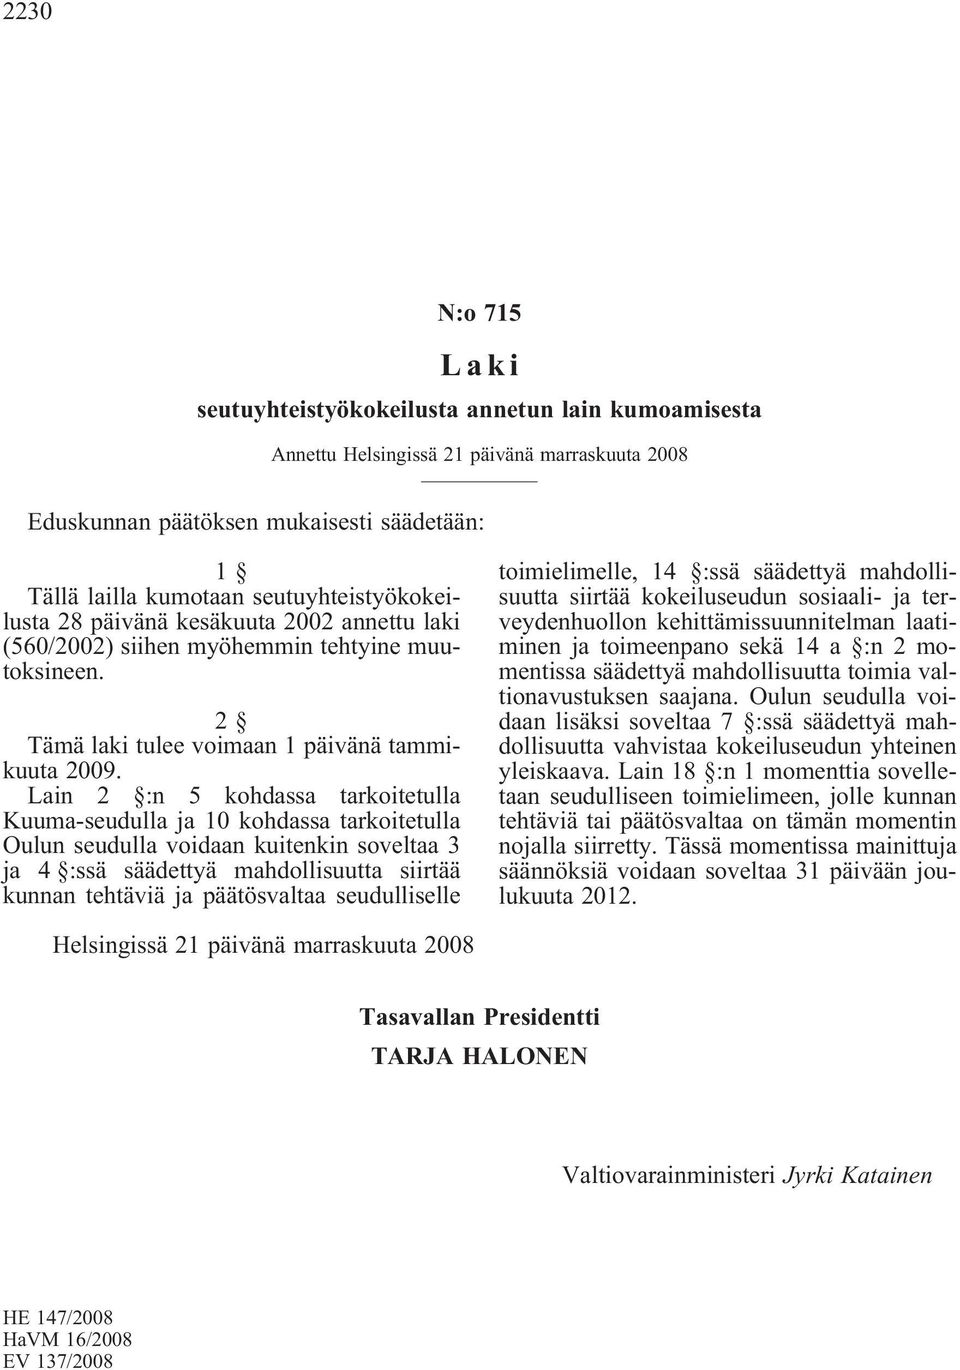 Lain 2 :n 5 kohdassa tarkoitetulla Kuuma-seudulla ja 10 kohdassa tarkoitetulla Oulun seudulla voidaan kuitenkin soveltaa 3 ja 4 :ssä säädettyä mahdollisuutta siirtää kunnan tehtäviä ja päätösvaltaa